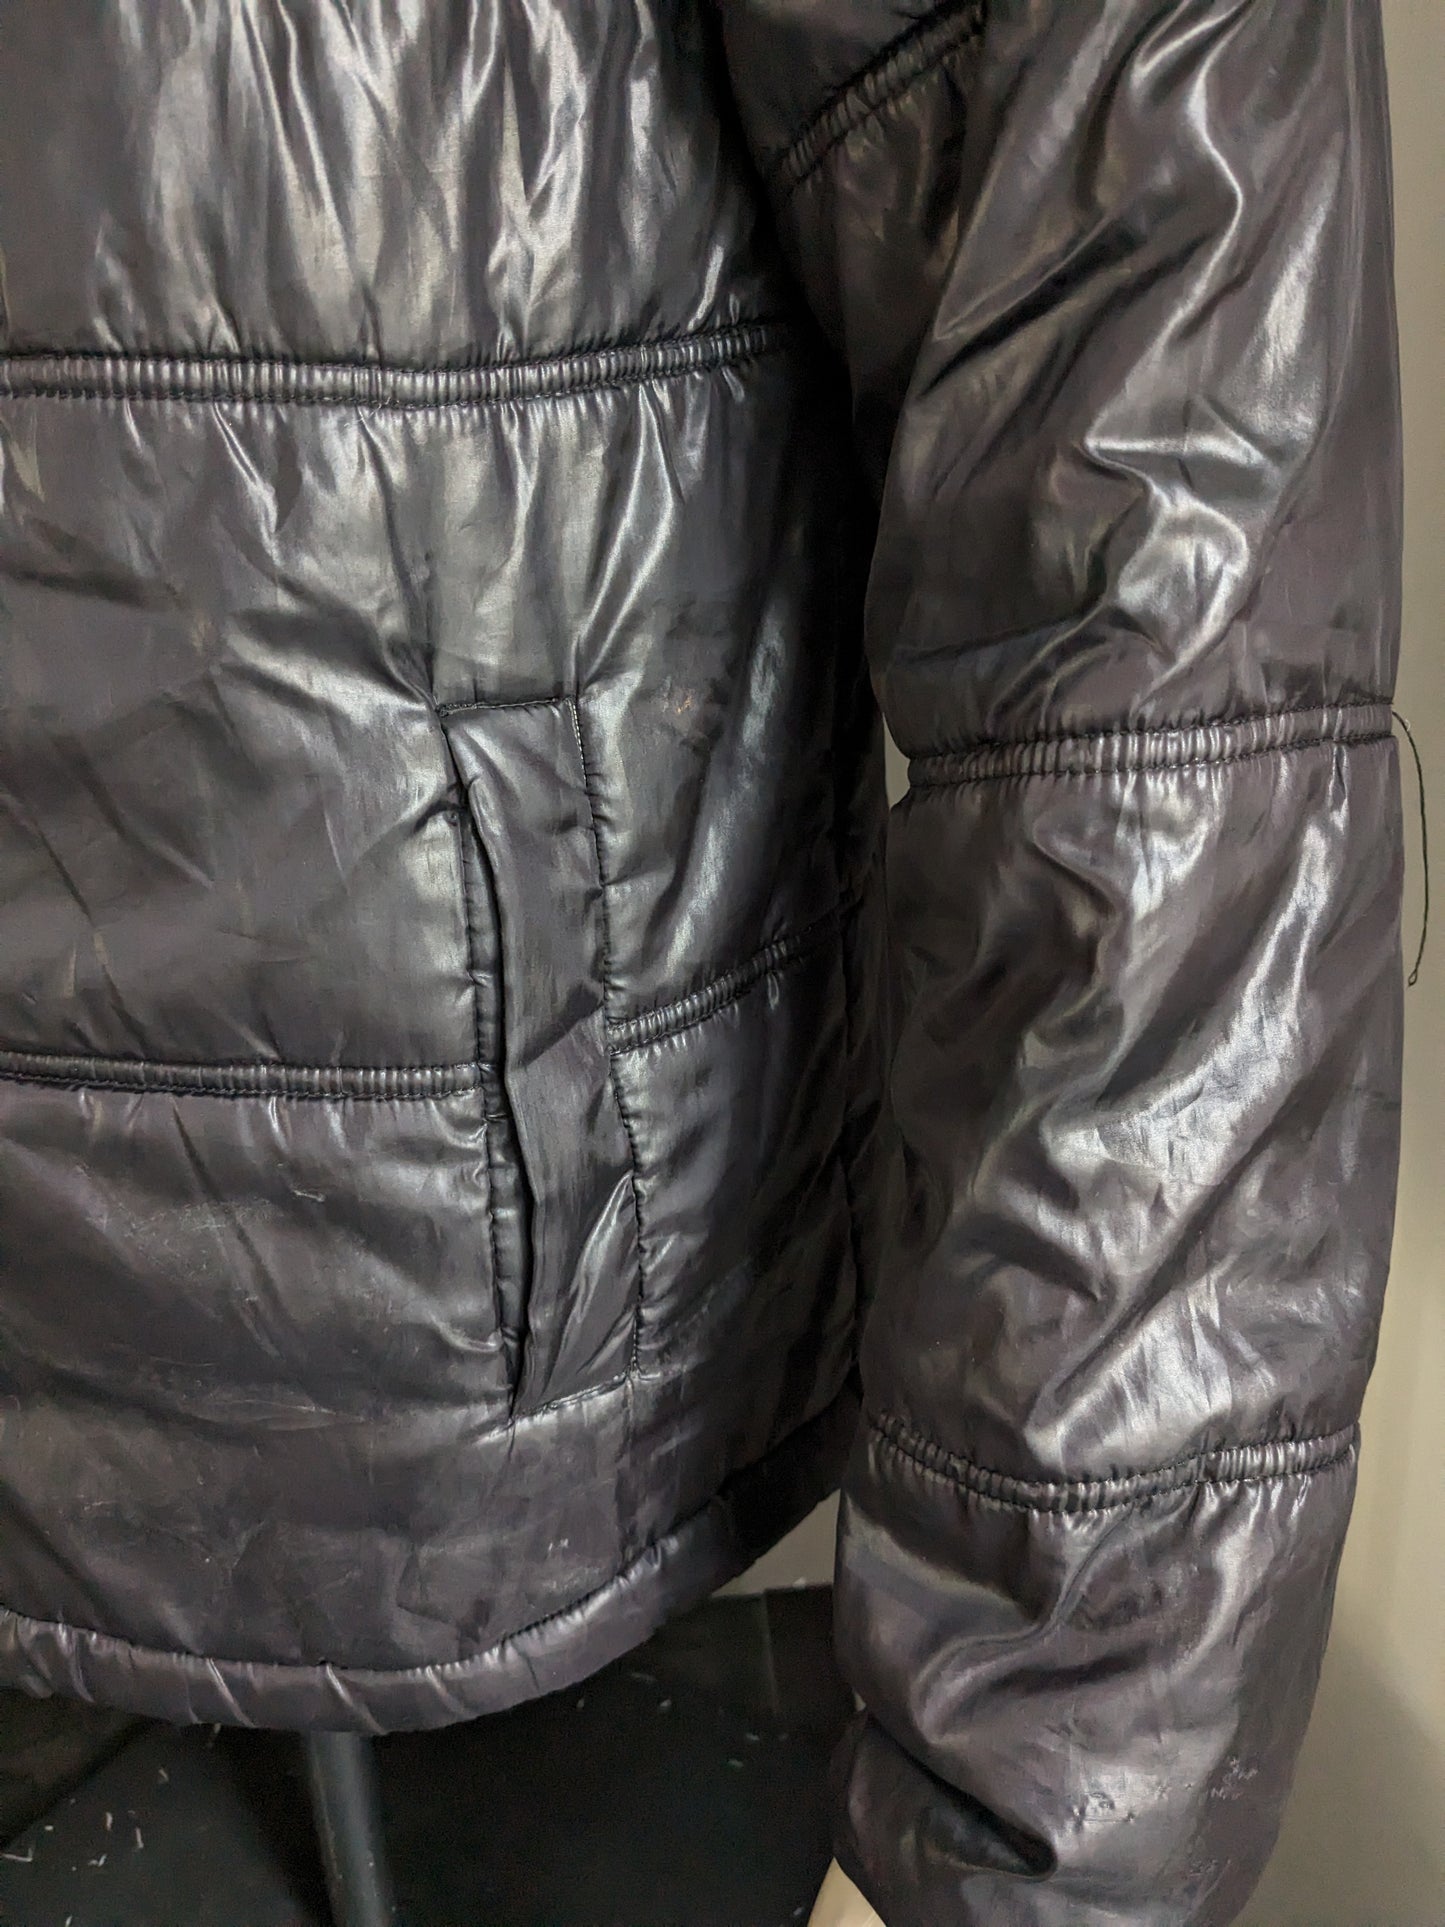 Le Coq Sportif gewatteerde winter jas met afritsbare capuchon. Zwart Grijs gekleurd. Maat M.